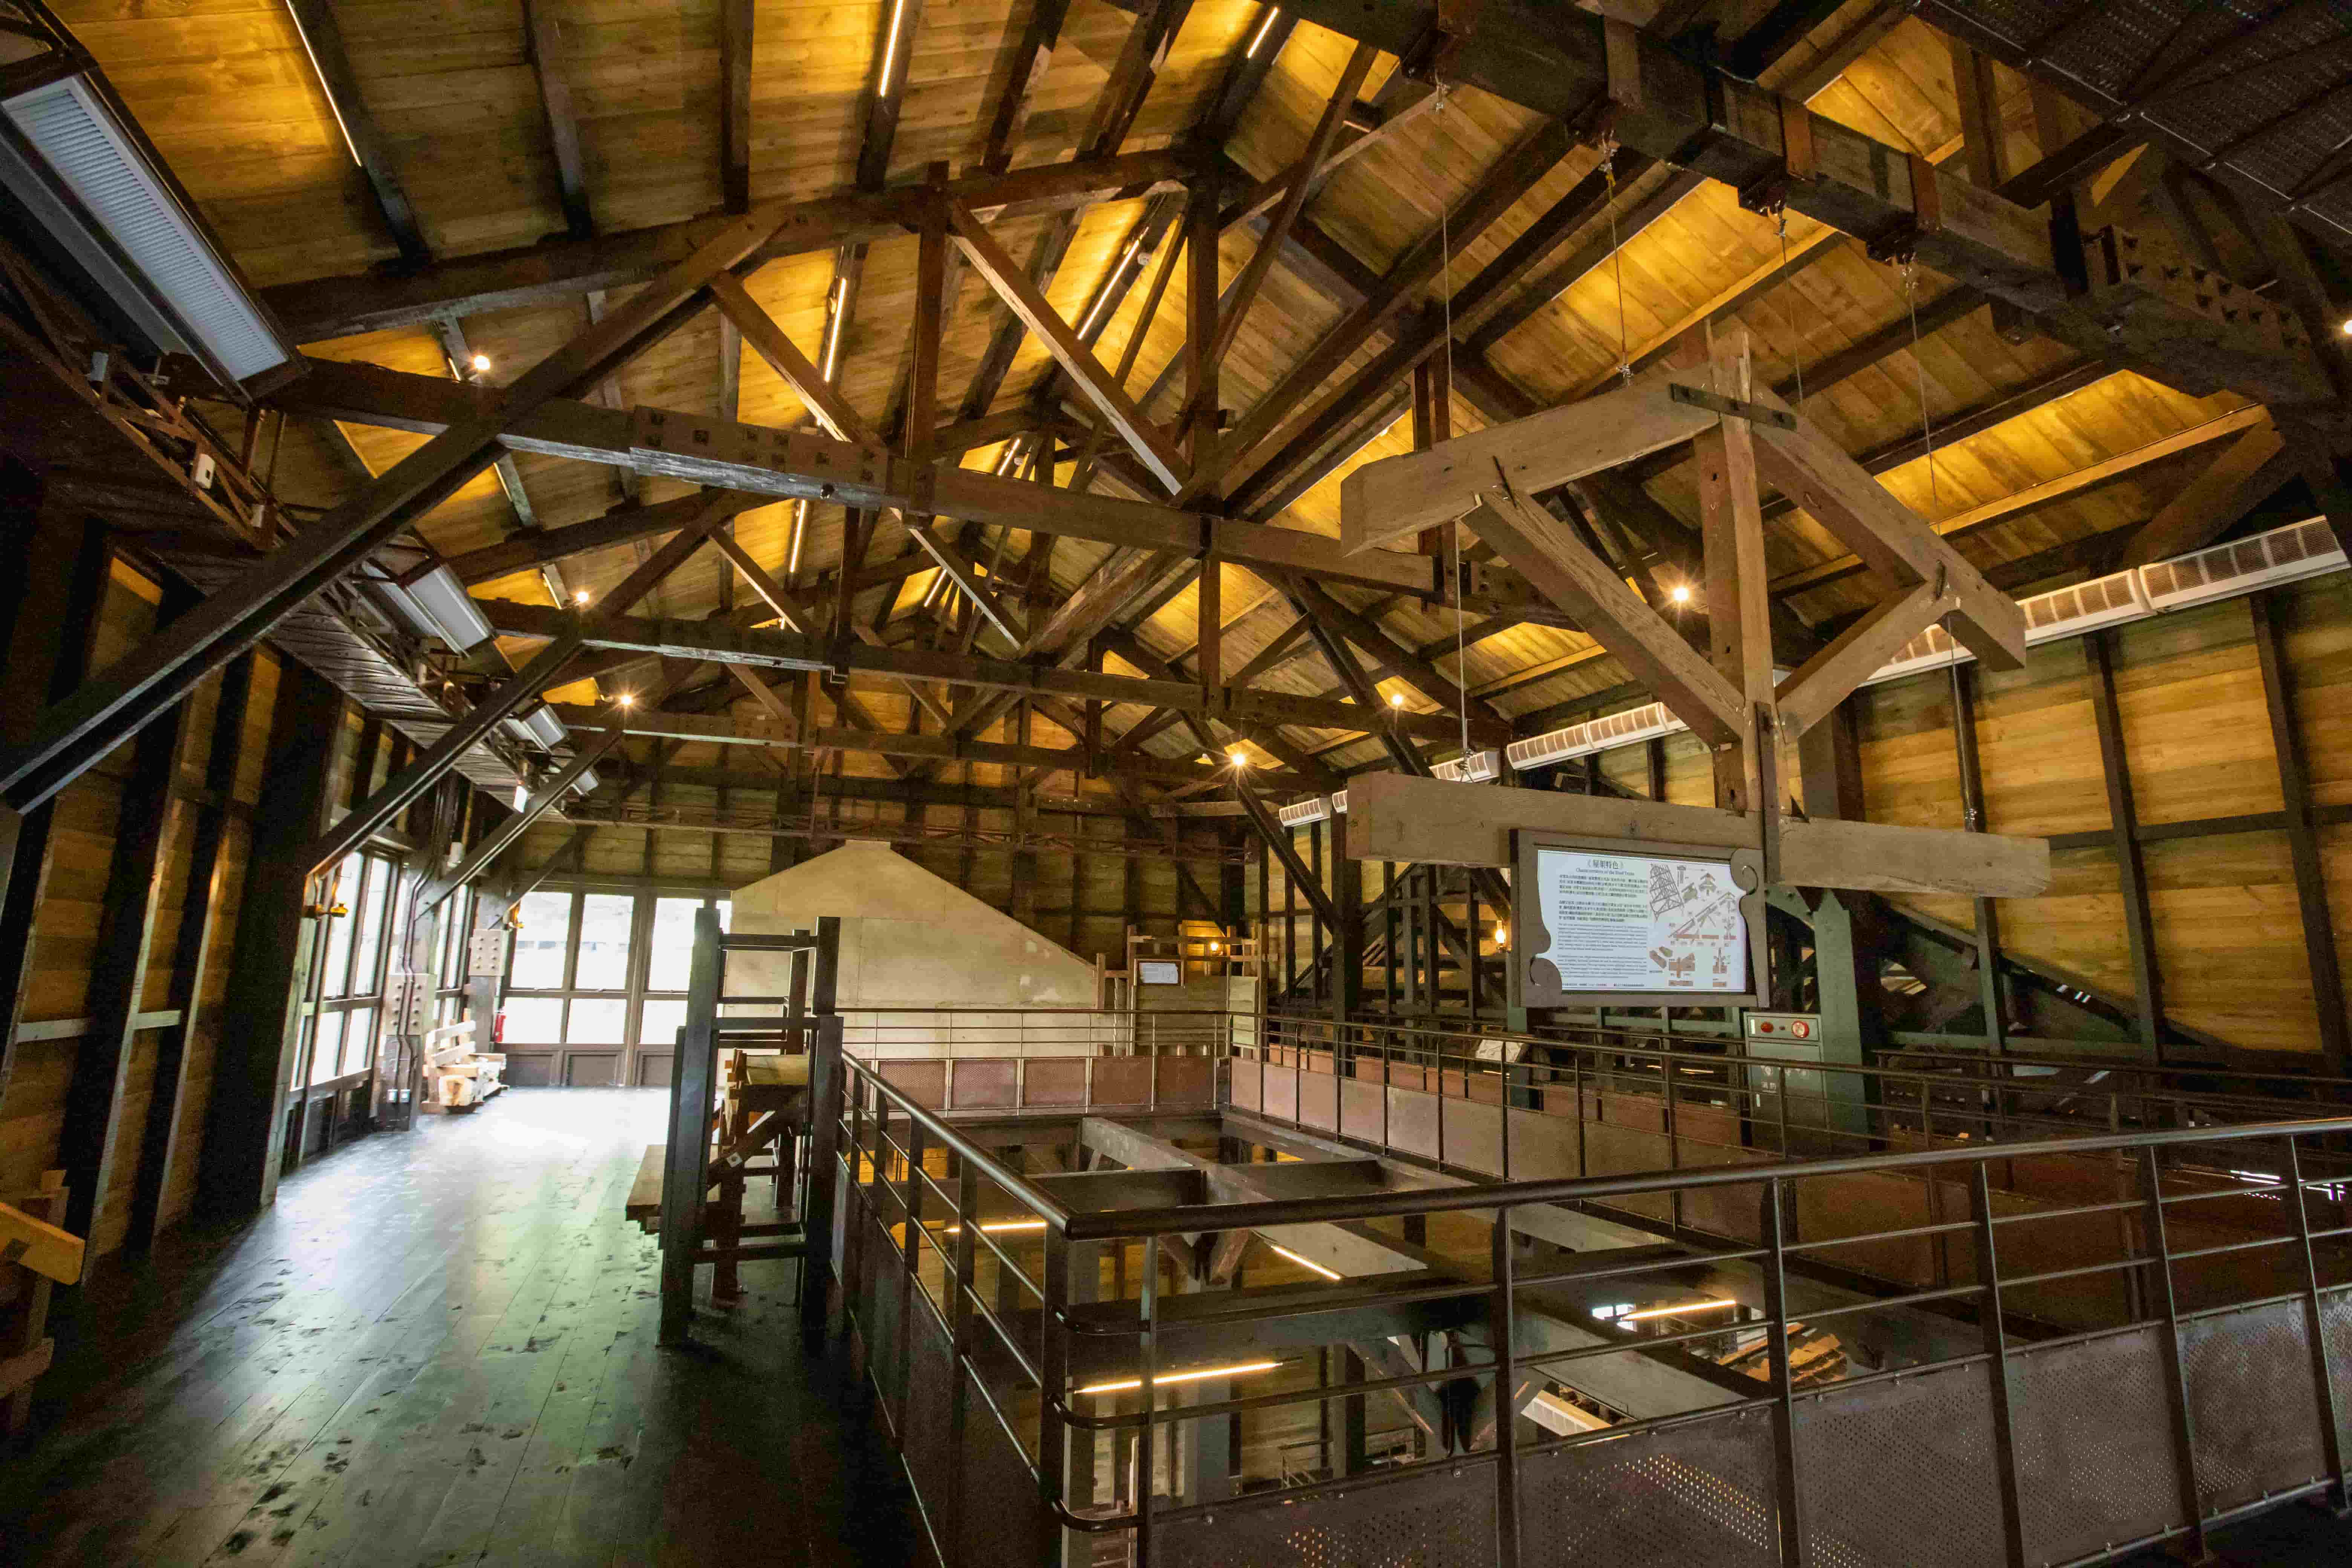 整煤廠三樓可俯瞰整座建物精湛的木匠技藝，並展示屋架、雨淋板、榫接等特殊木造工法